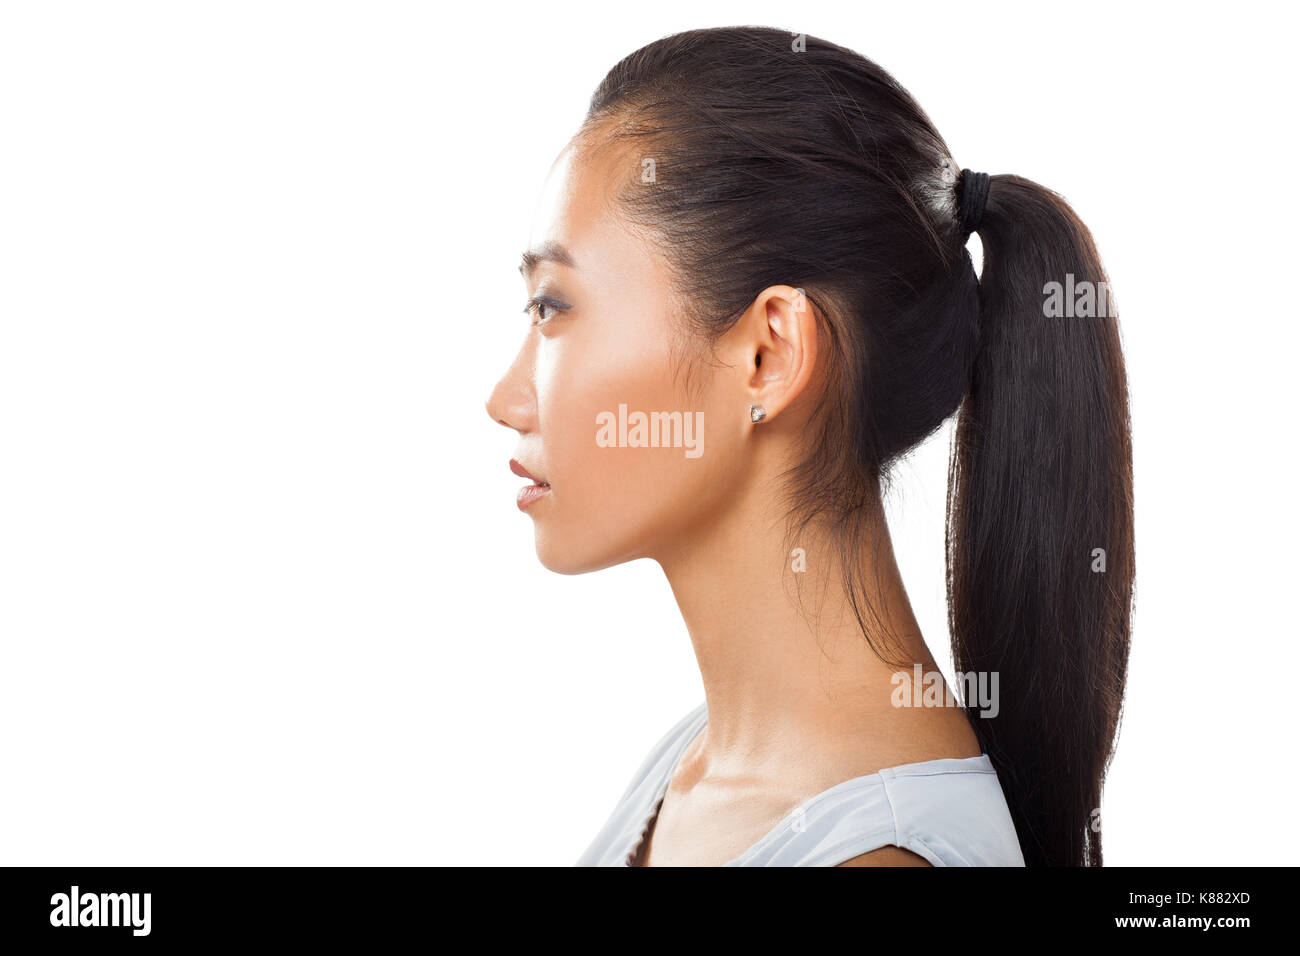 Closeup ritratto di Asian giovane donna nel profilo con coda di cavallo. Studo foto di Pretty girl conciate con nuova pelle e capelli scuri per diversi trattamenti di bellezza e Foto Stock